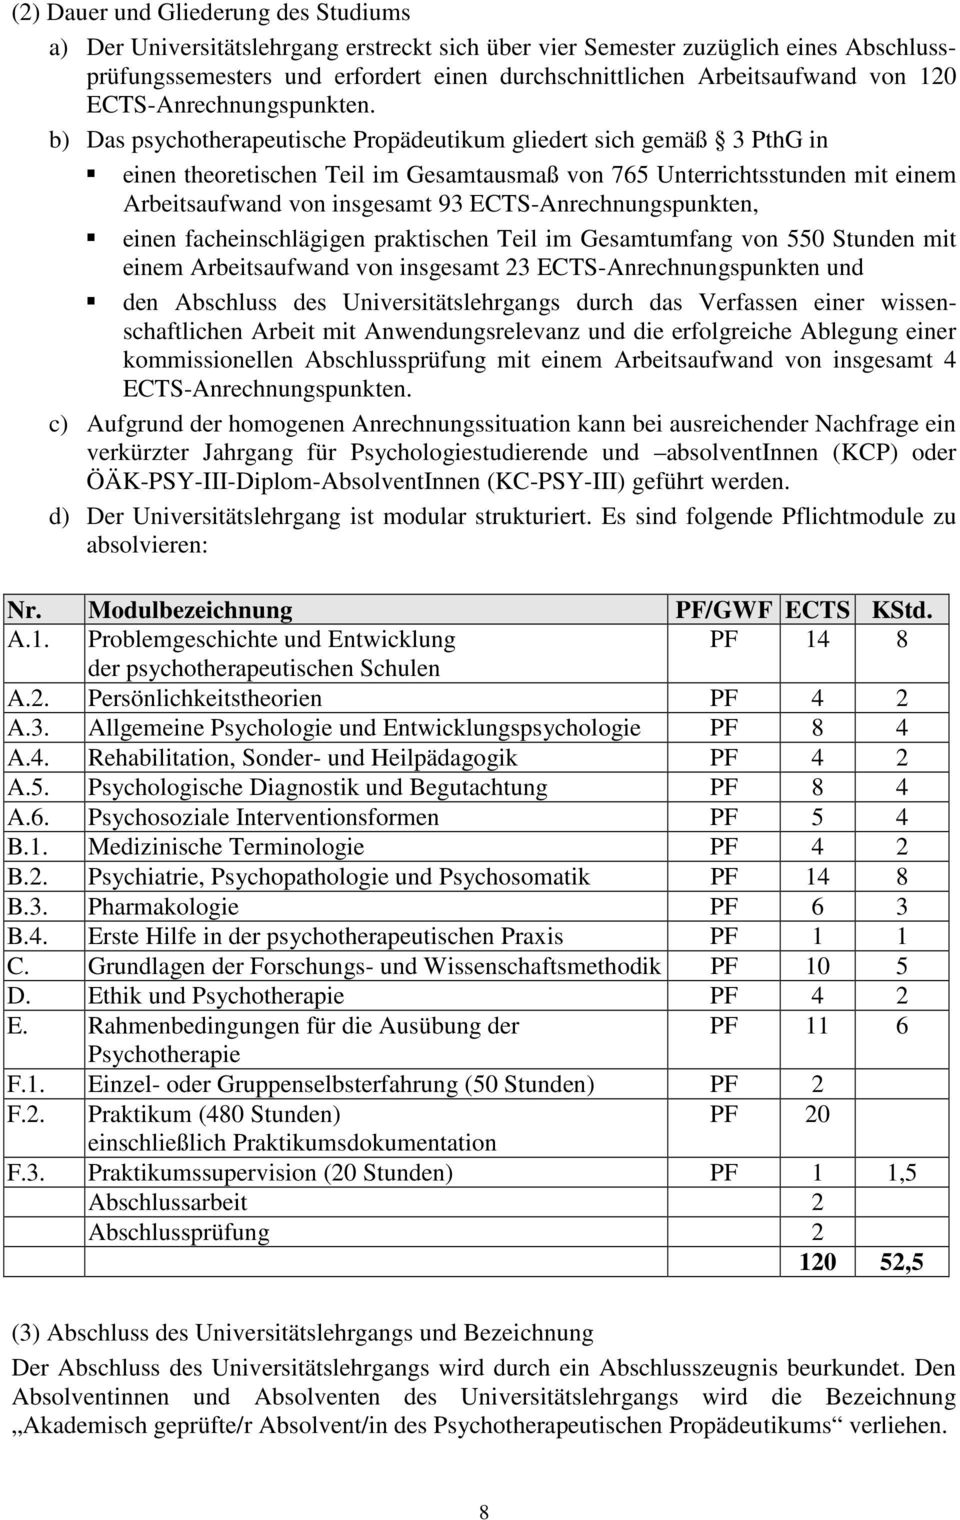 b) Das psychotherapeutische Propädeutikum gliedert sich gemäß 3 PthG in einen theoretischen Teil im Gesamtausmaß von 765 Unterrichtsstunden mit einem Arbeitsaufwand von insgesamt 93